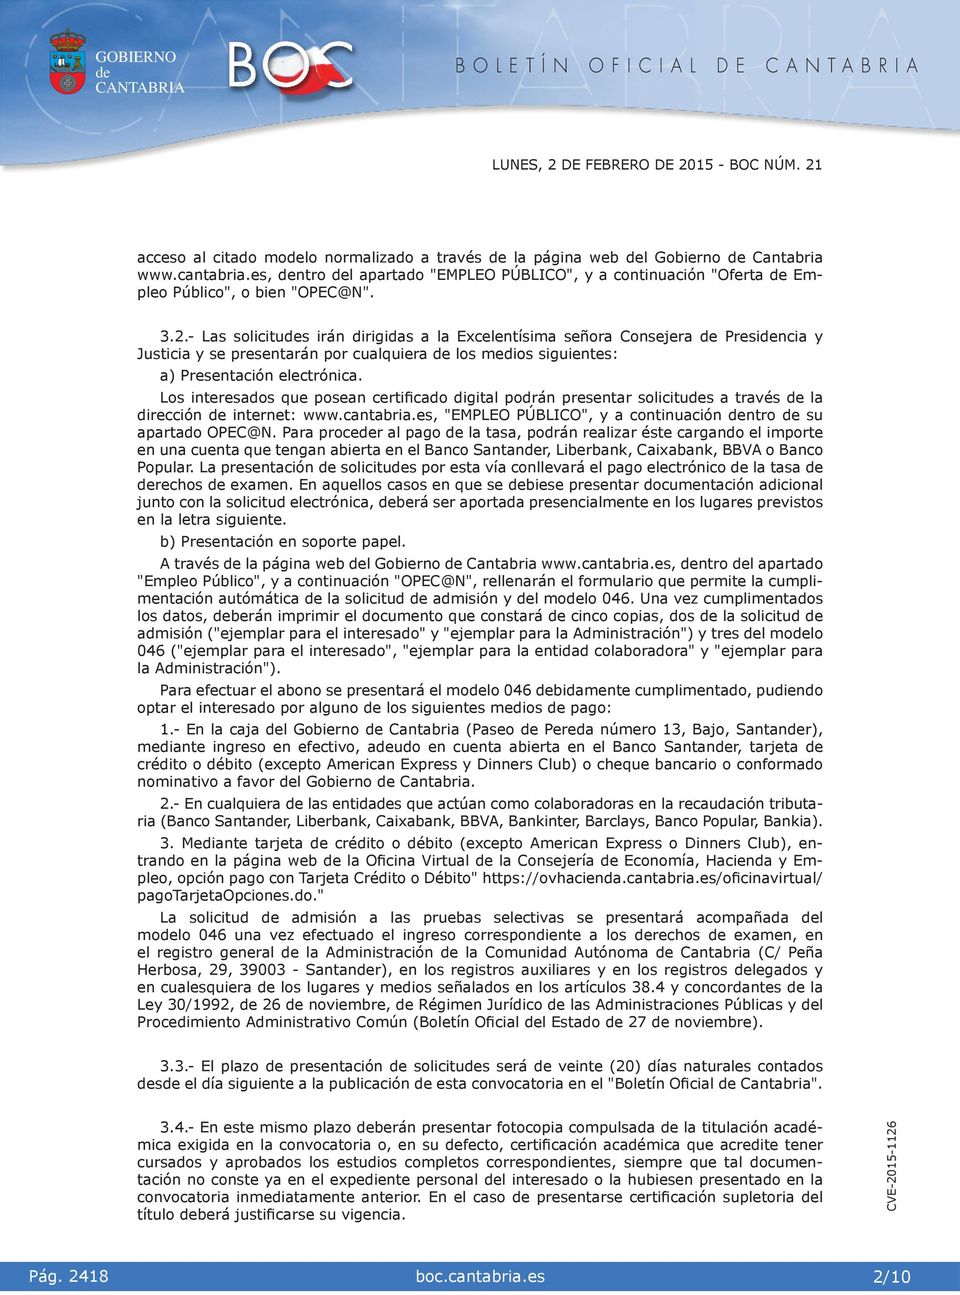 Los nteresados que posean certfcado dgtal podrán presentar solctus a través la dreccón nternet: www.cantabra.es, "EMPLEO PÚBLICO", y a contnuacón ntro su apartado OPEC@N.